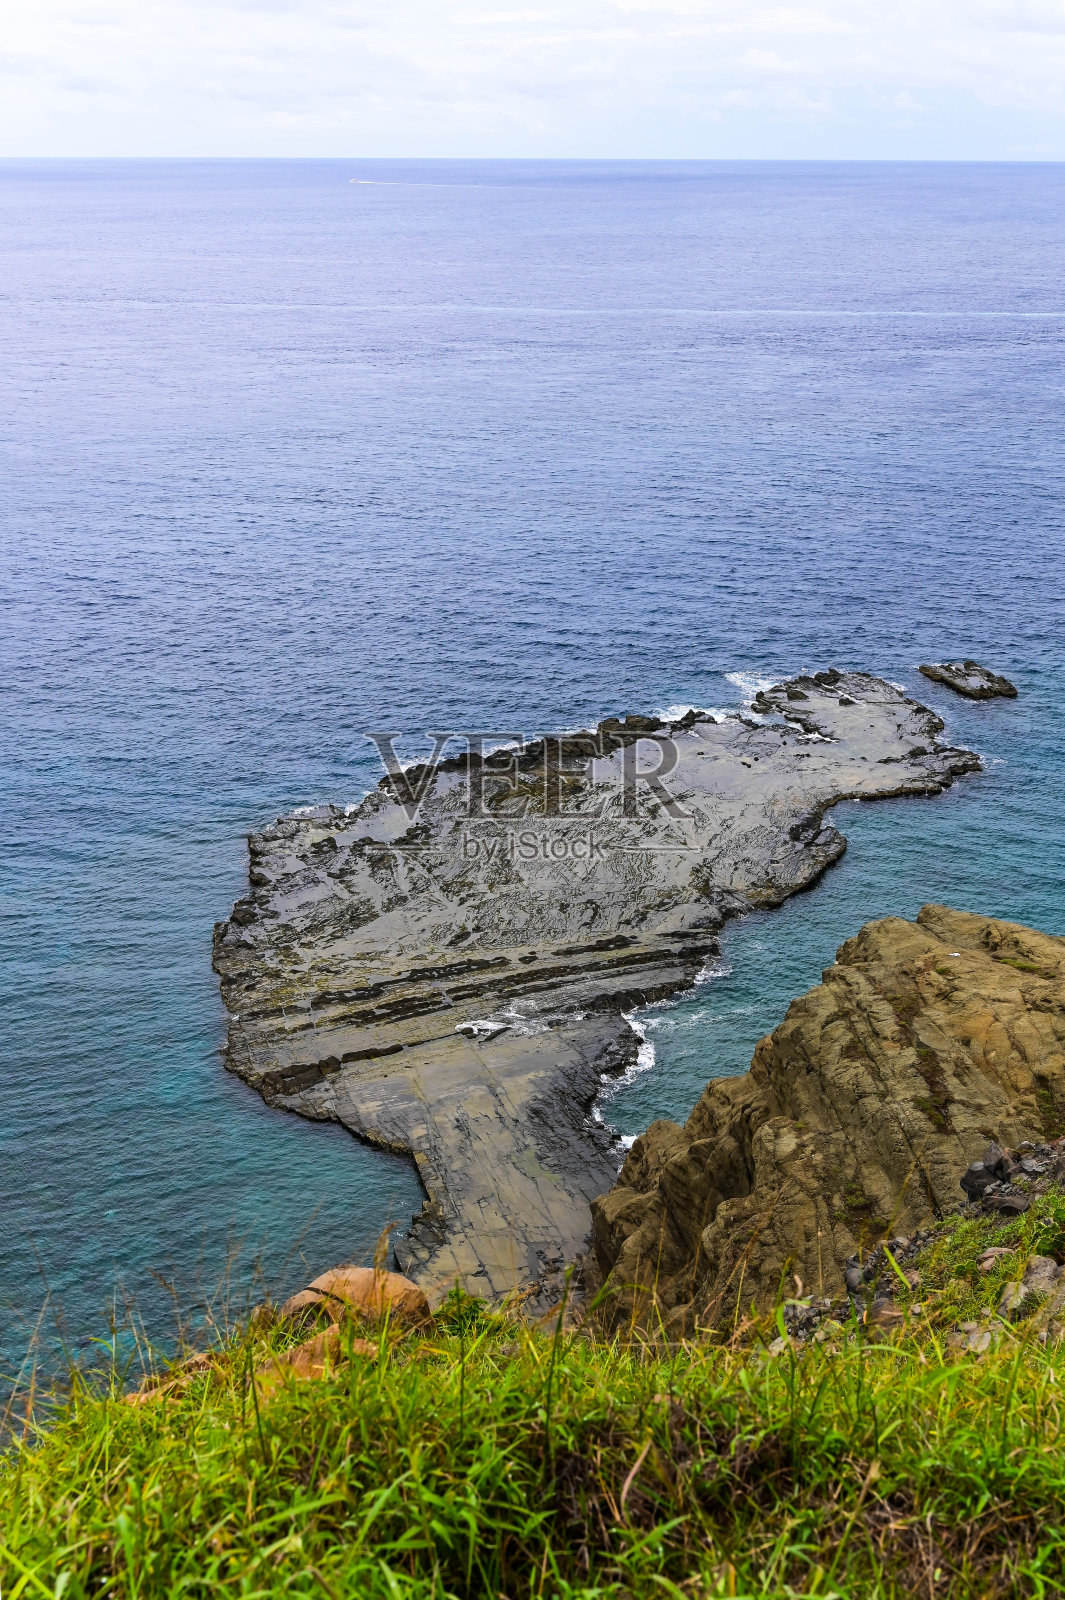 赤美岛是位于澎湖的台湾近海岛屿。赤美岛有一个风景优美的“小台湾”照片摄影图片